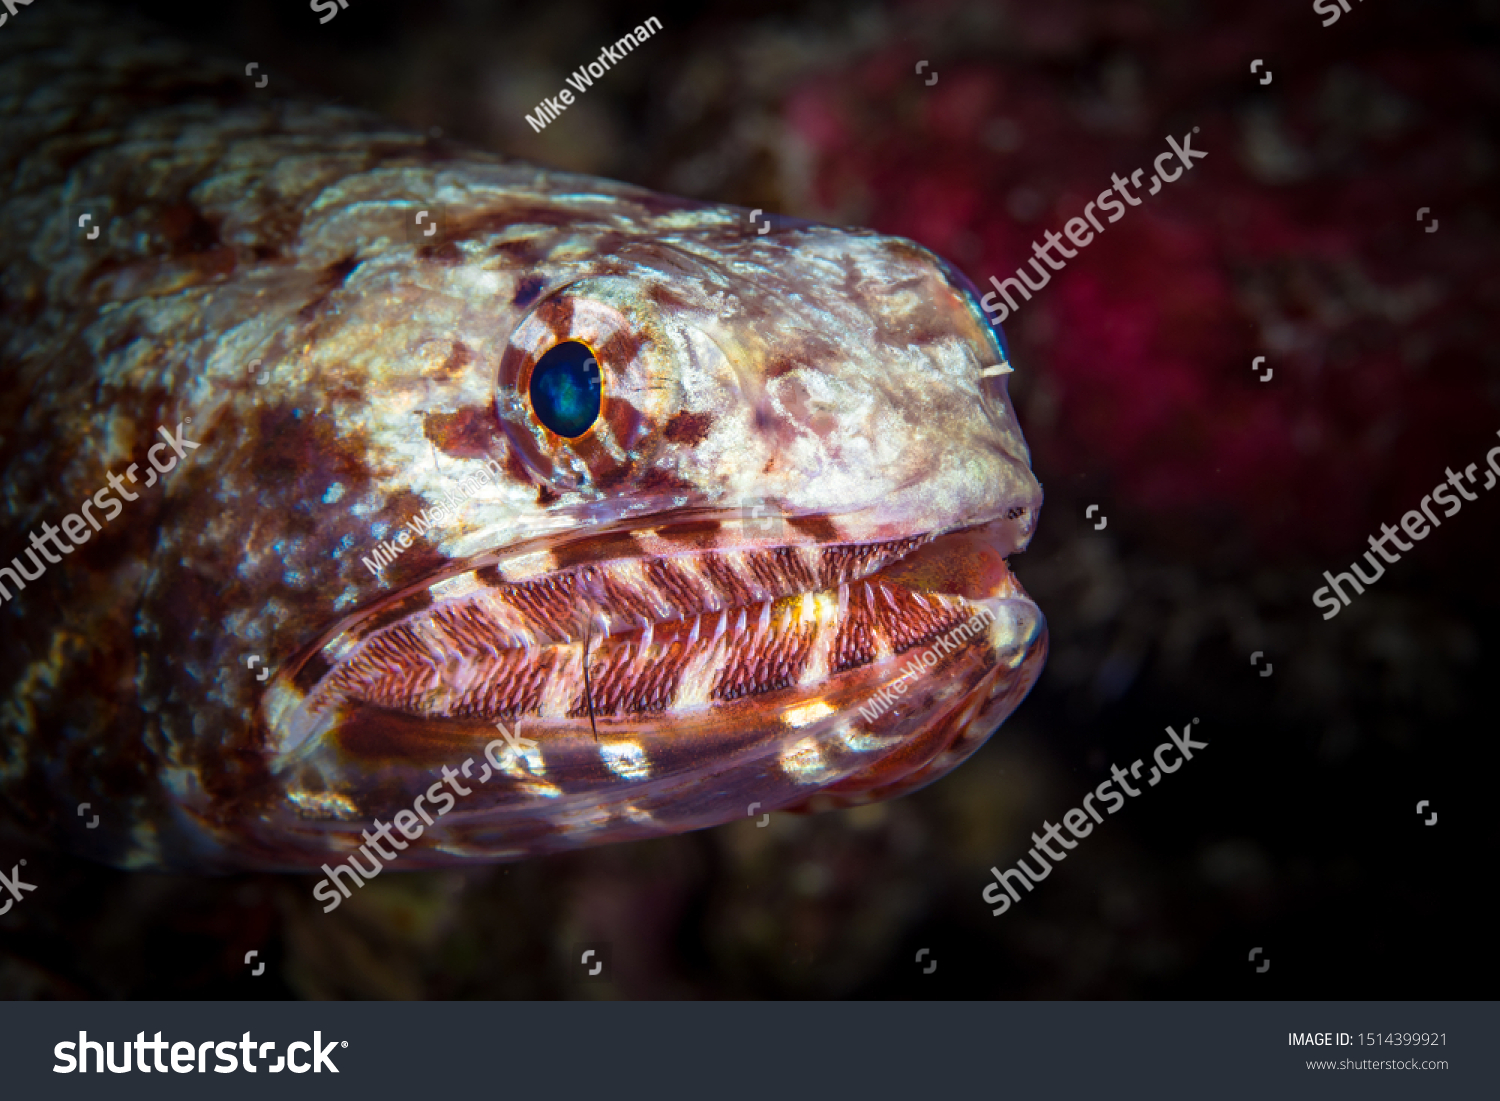 lizard fish pet